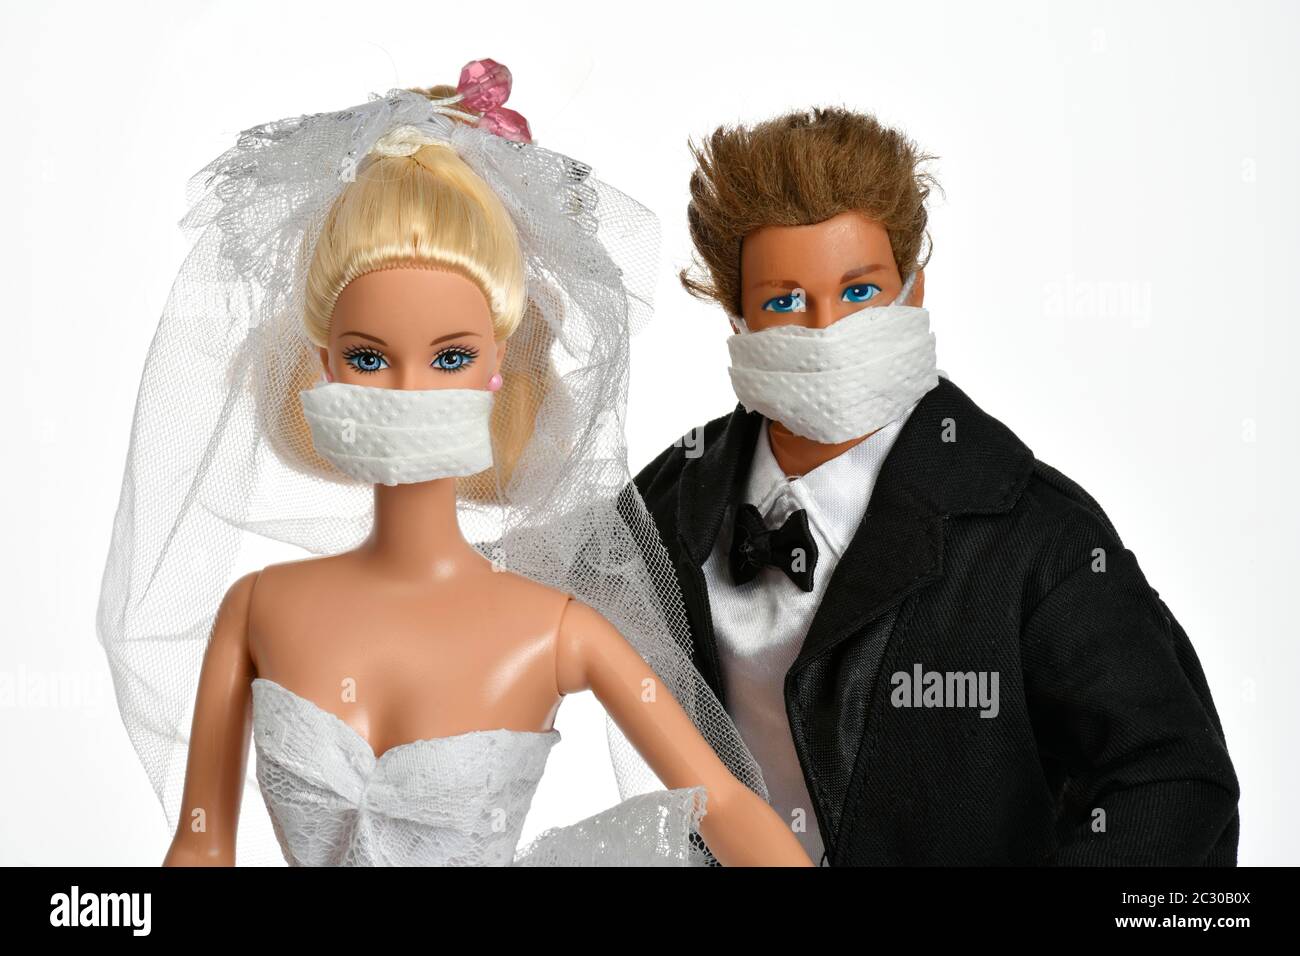 Imagen de símbolo, bodas canceladas, compañía de juguetes Mattel en crisis, Barbie y Ken con máscaras, Corona crisis, Alemania Foto de stock